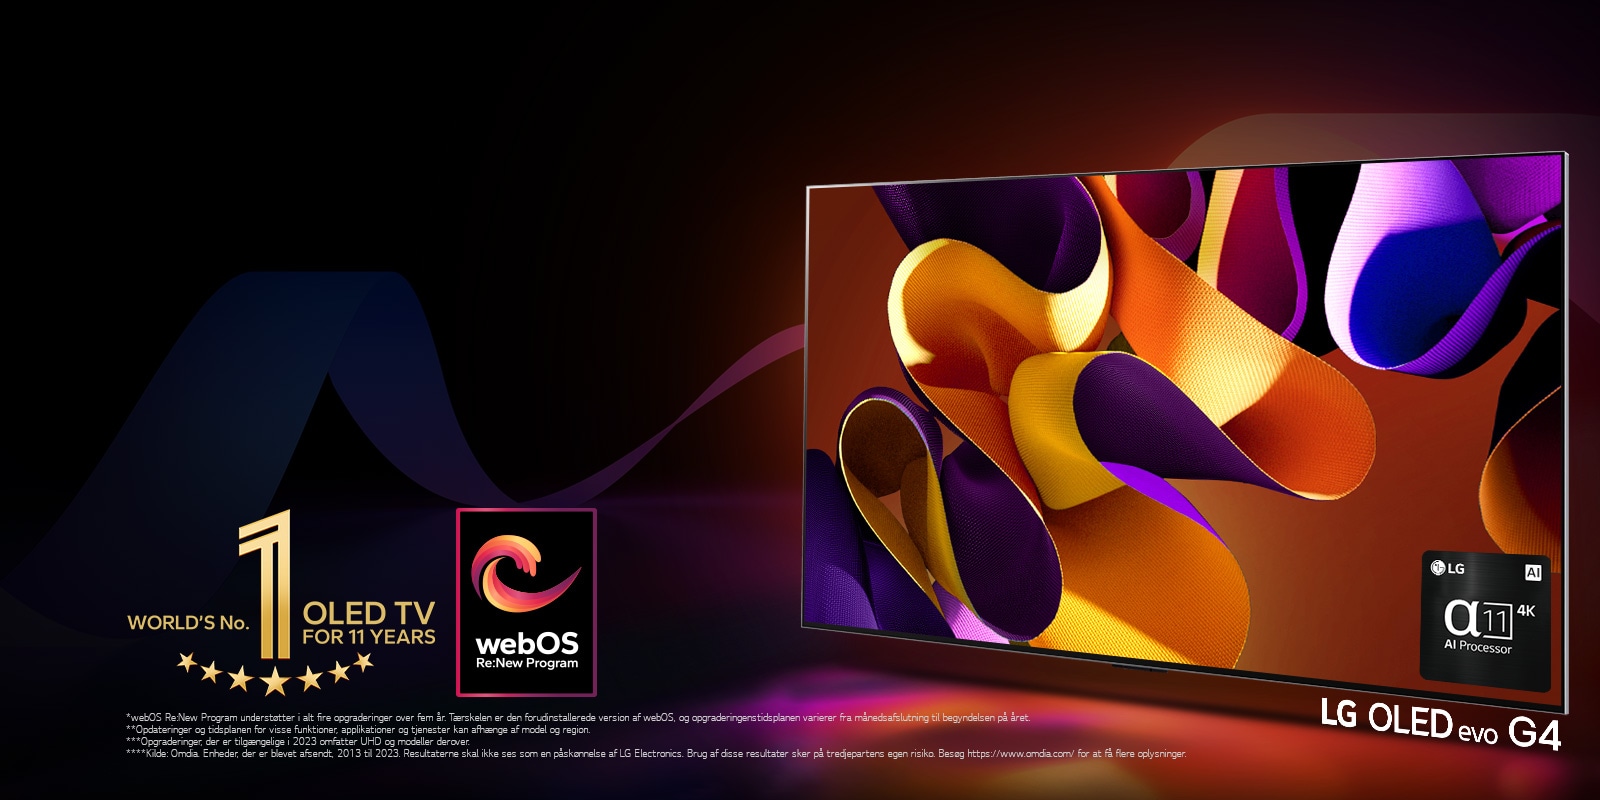 LG OLED evo TV G4 med et abstrakt, farvestrålende kunstværk på skærmen på en sort baggrund med subtile farvehvirvler.  Lys udstråles fra skærmen, hvilket kaster farvestrålende skygger. Alpha 11 AI Processor 4K er i nederst højre hjørne på TV-skærmen. Emblemet “Verdens førende OLED TV i 11 år” og logoet “webOS Re:New Program” er på billedet. En ansvarsfraskrivelse fremsætter: “webOS Re:New Program understøtter i alt fire opgraderinger over fem år. Tærskelen er den forudinstallerede version af webOS, og opgraderingenstidsplanen varierer fra månedsafslutning til begyndelse på året.”  “Opdateringer og tidsplanen for visse funktioner, applikationer og tjenester kan afhænge af model og region.”  “Opgraderinger, der er tilgængelige i 2023 omfatter UHD og modeller derover.” “Kilde: Omdia. Enheder, der er blevet afsendt, 2013 til 2023. Resultaterne skal ikke ses som en påskønnelse af LG Electronics. Brug af disse resultater sker på tredjepartens egen risiko. Besøg https://www.omdia.com/ for at få flere oplysninger.”